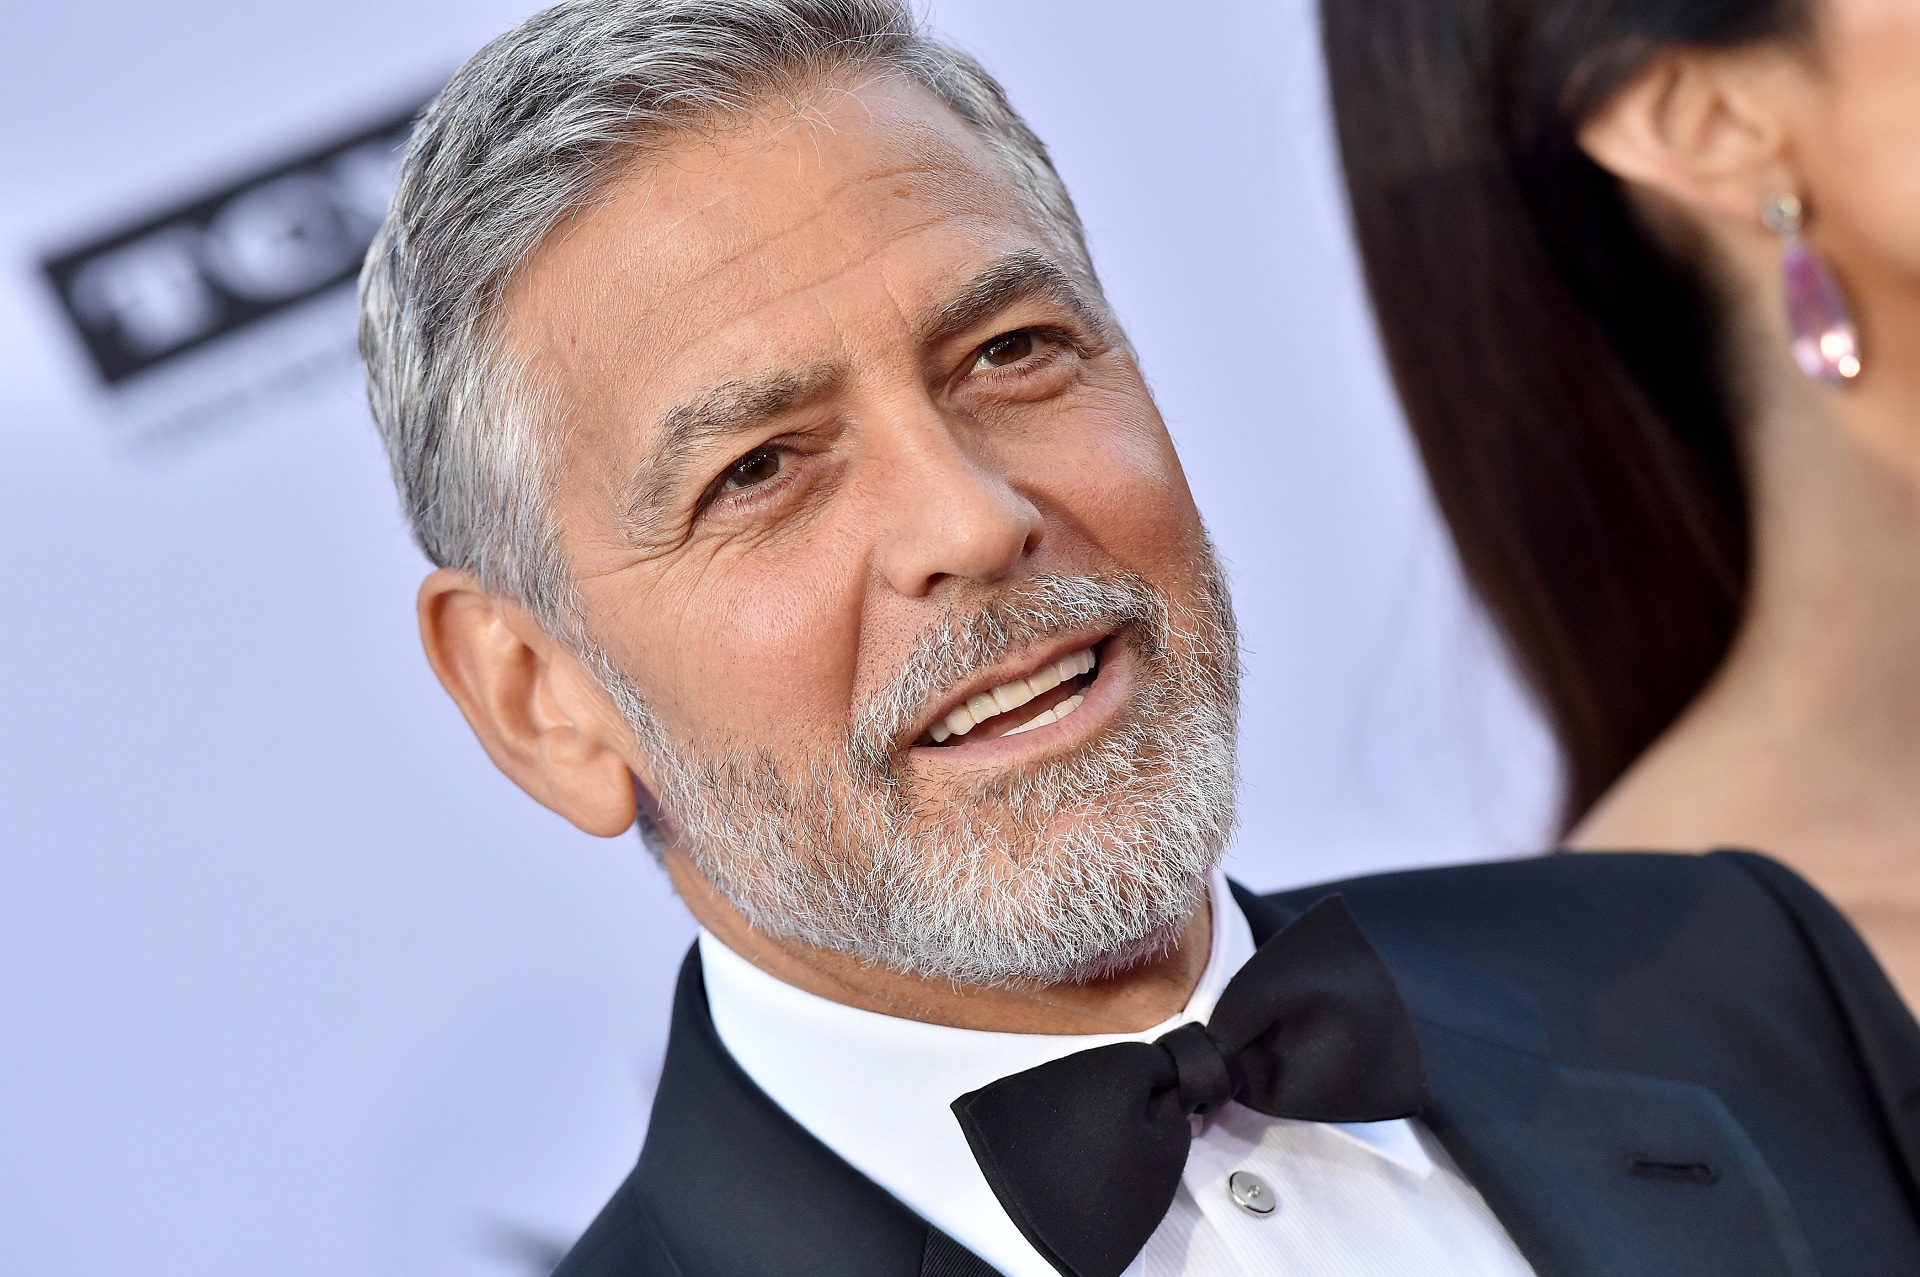 Скачать обои бесплатно Знаменитости, Джордж Клуни картинка на рабочий стол ПК